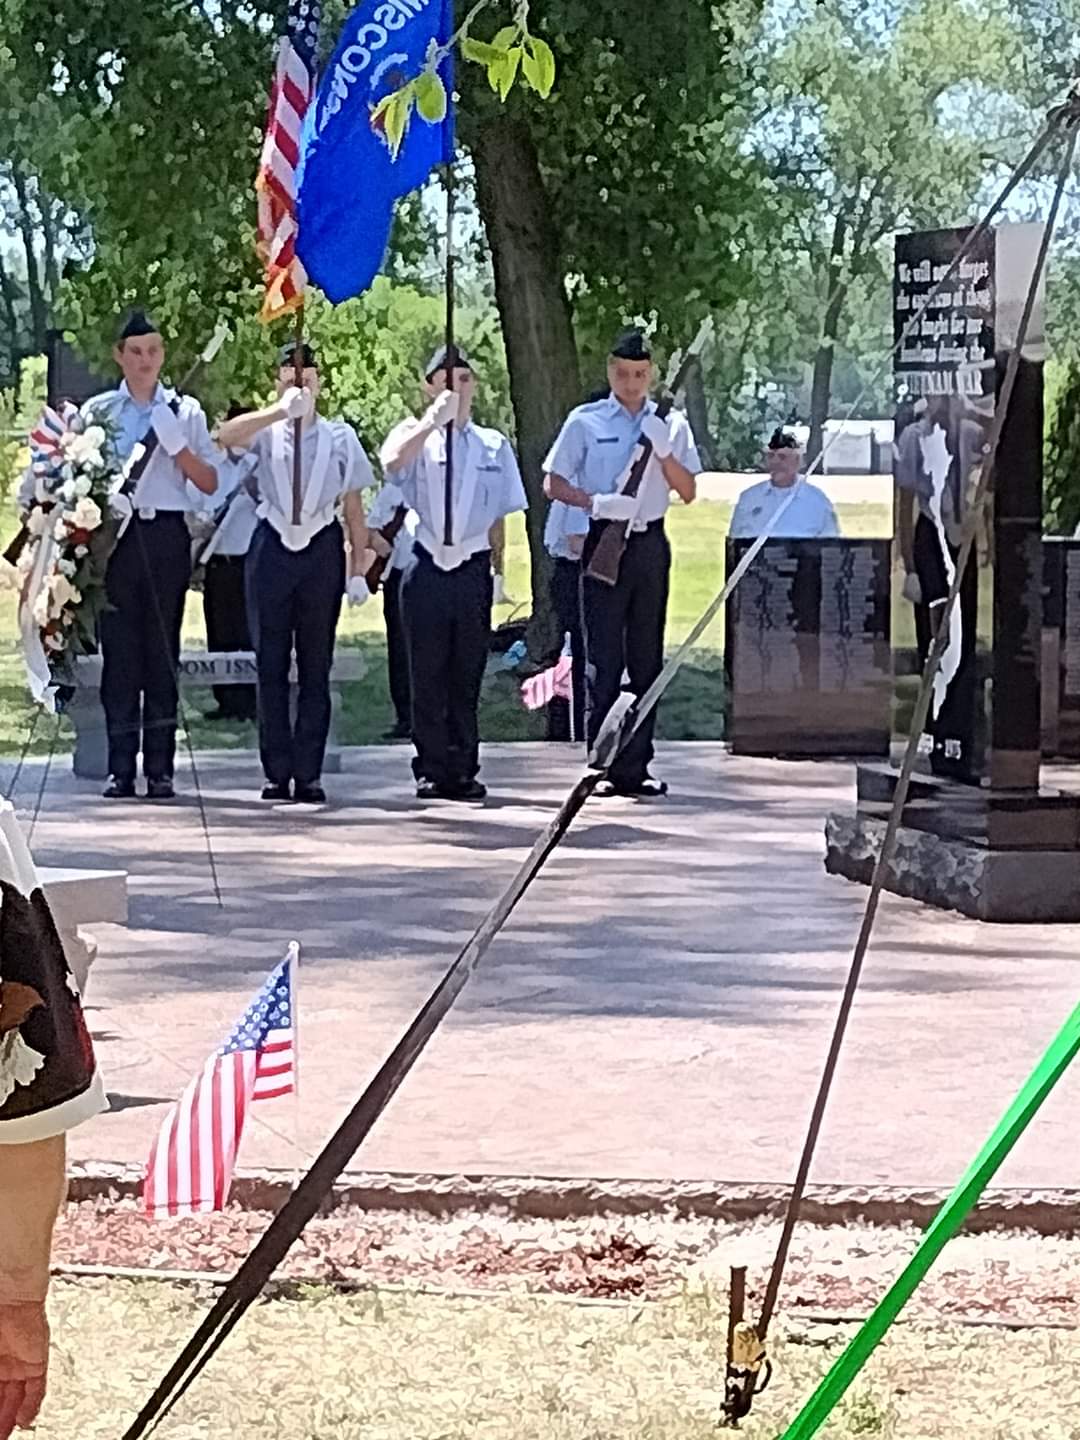 Photos from the June 23, 2022 Wisconsin Vietnam Memorial in La Crosse, WI